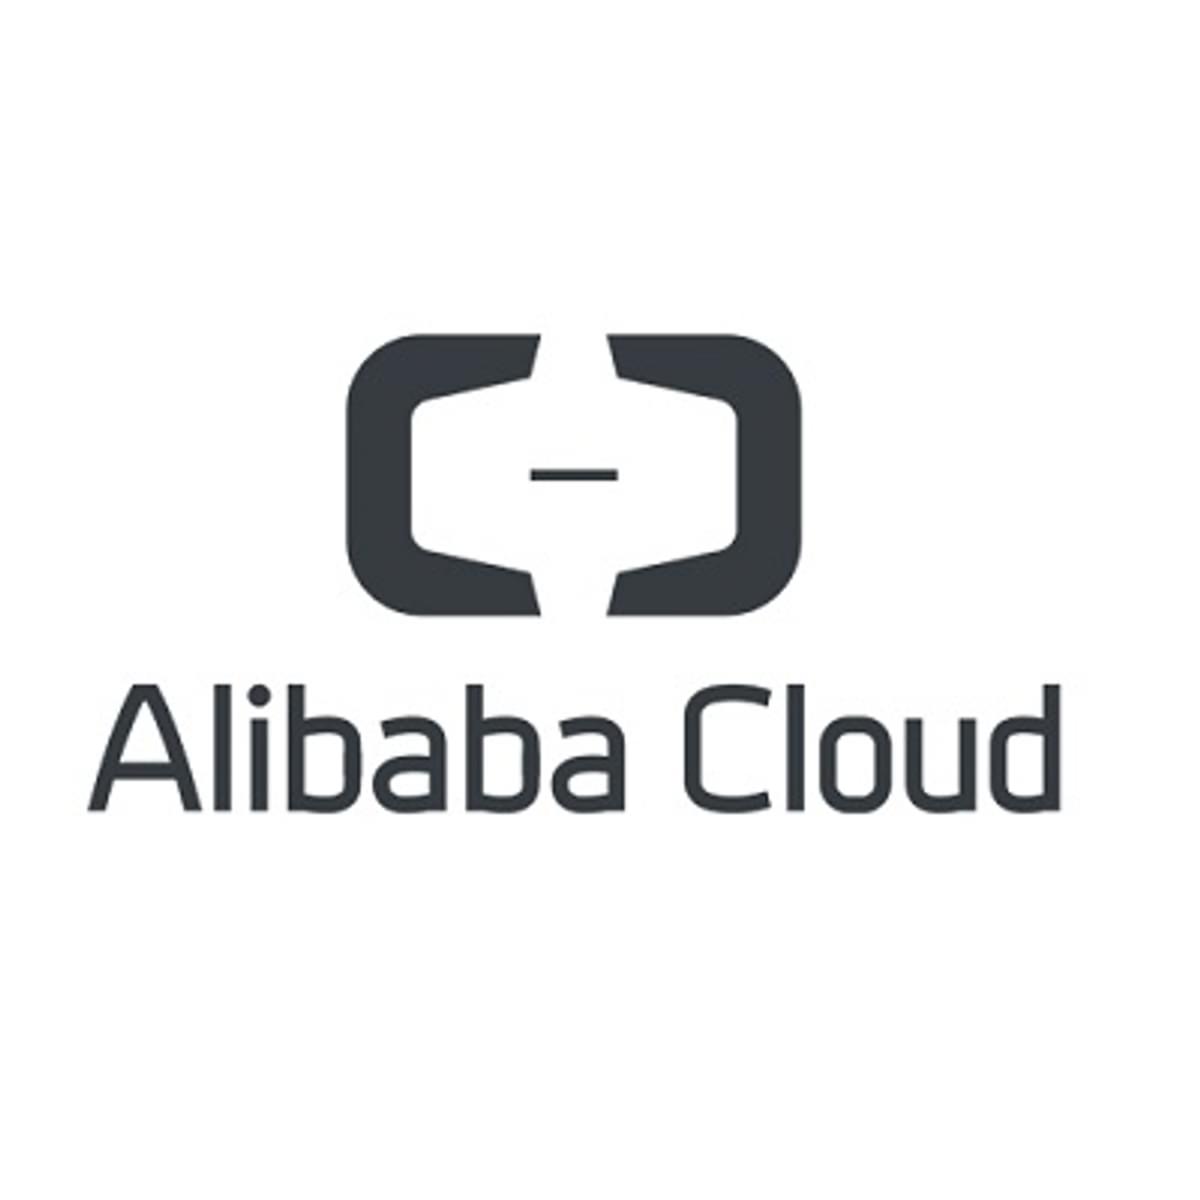 Alibaba Cloud investeert flink in zijn partners image